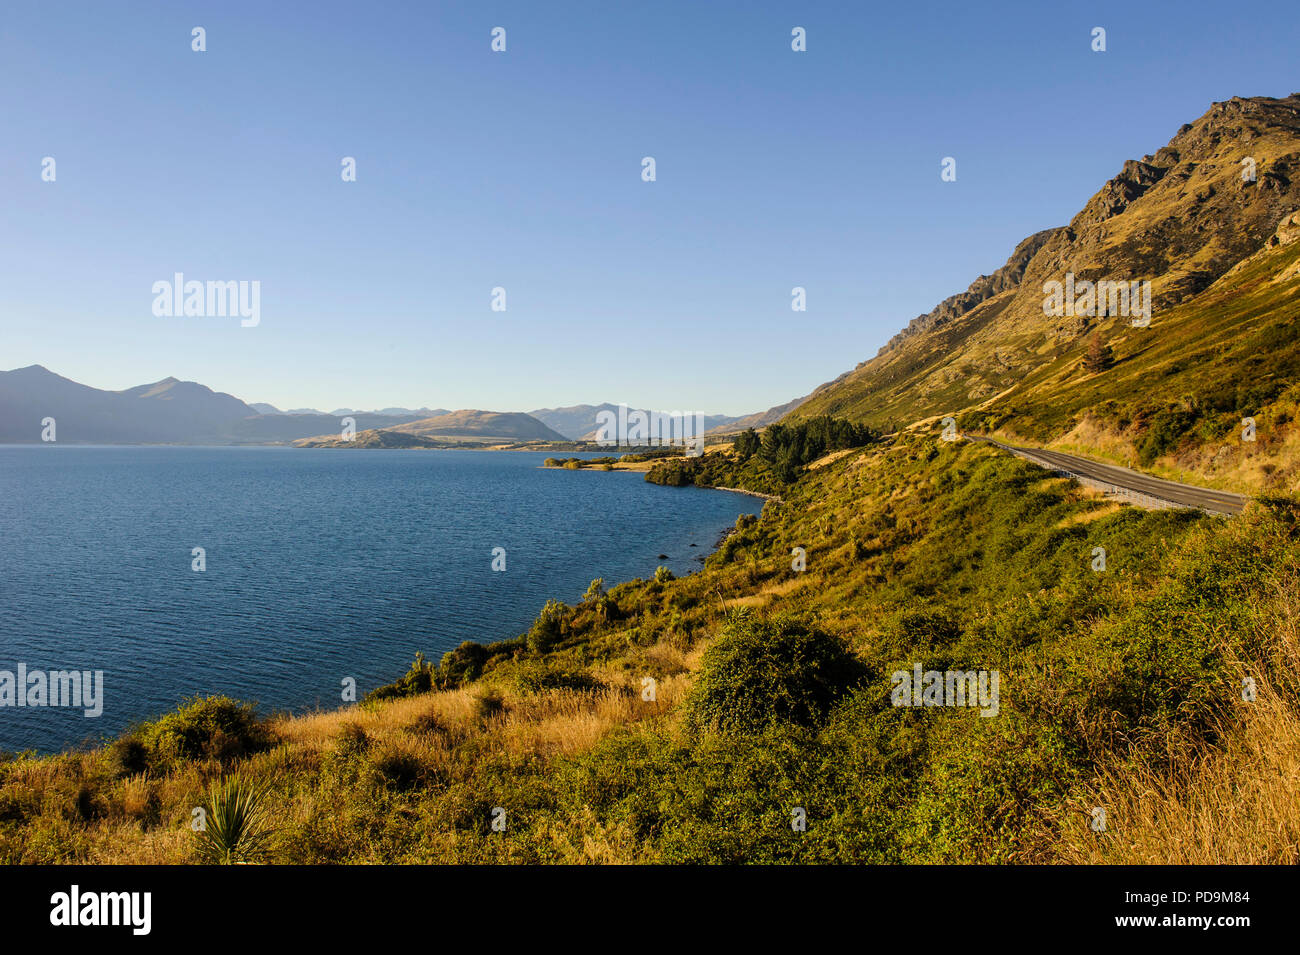 Les rives du lac Wakatipu, Queenstown, île du Sud, Nouvelle-Zélande Banque D'Images